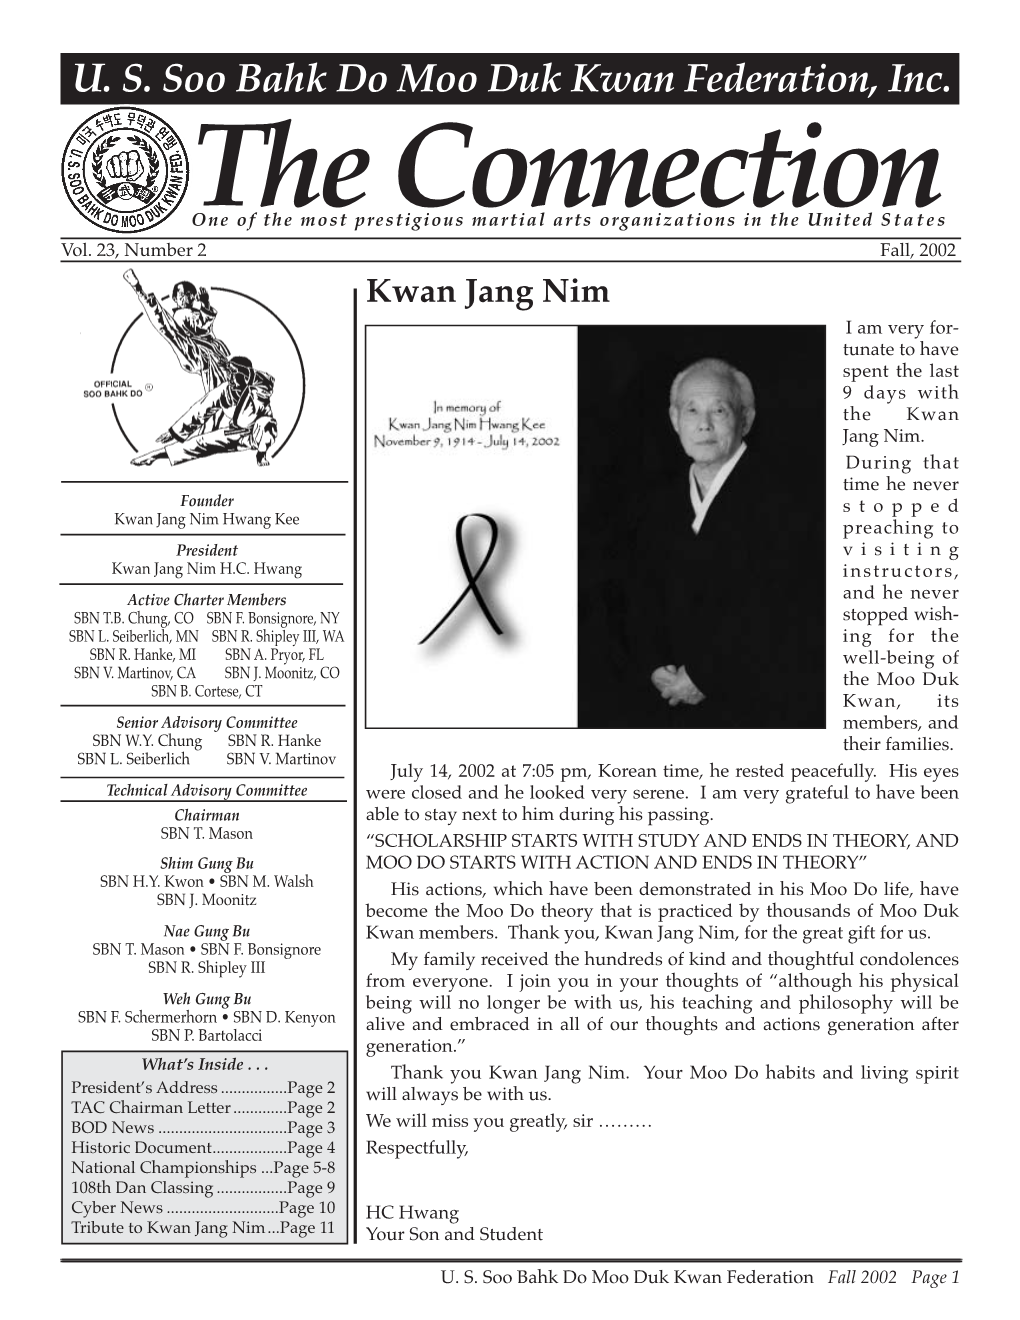 2002 09 Usa Moo Duk Kwan Federation Newsletter